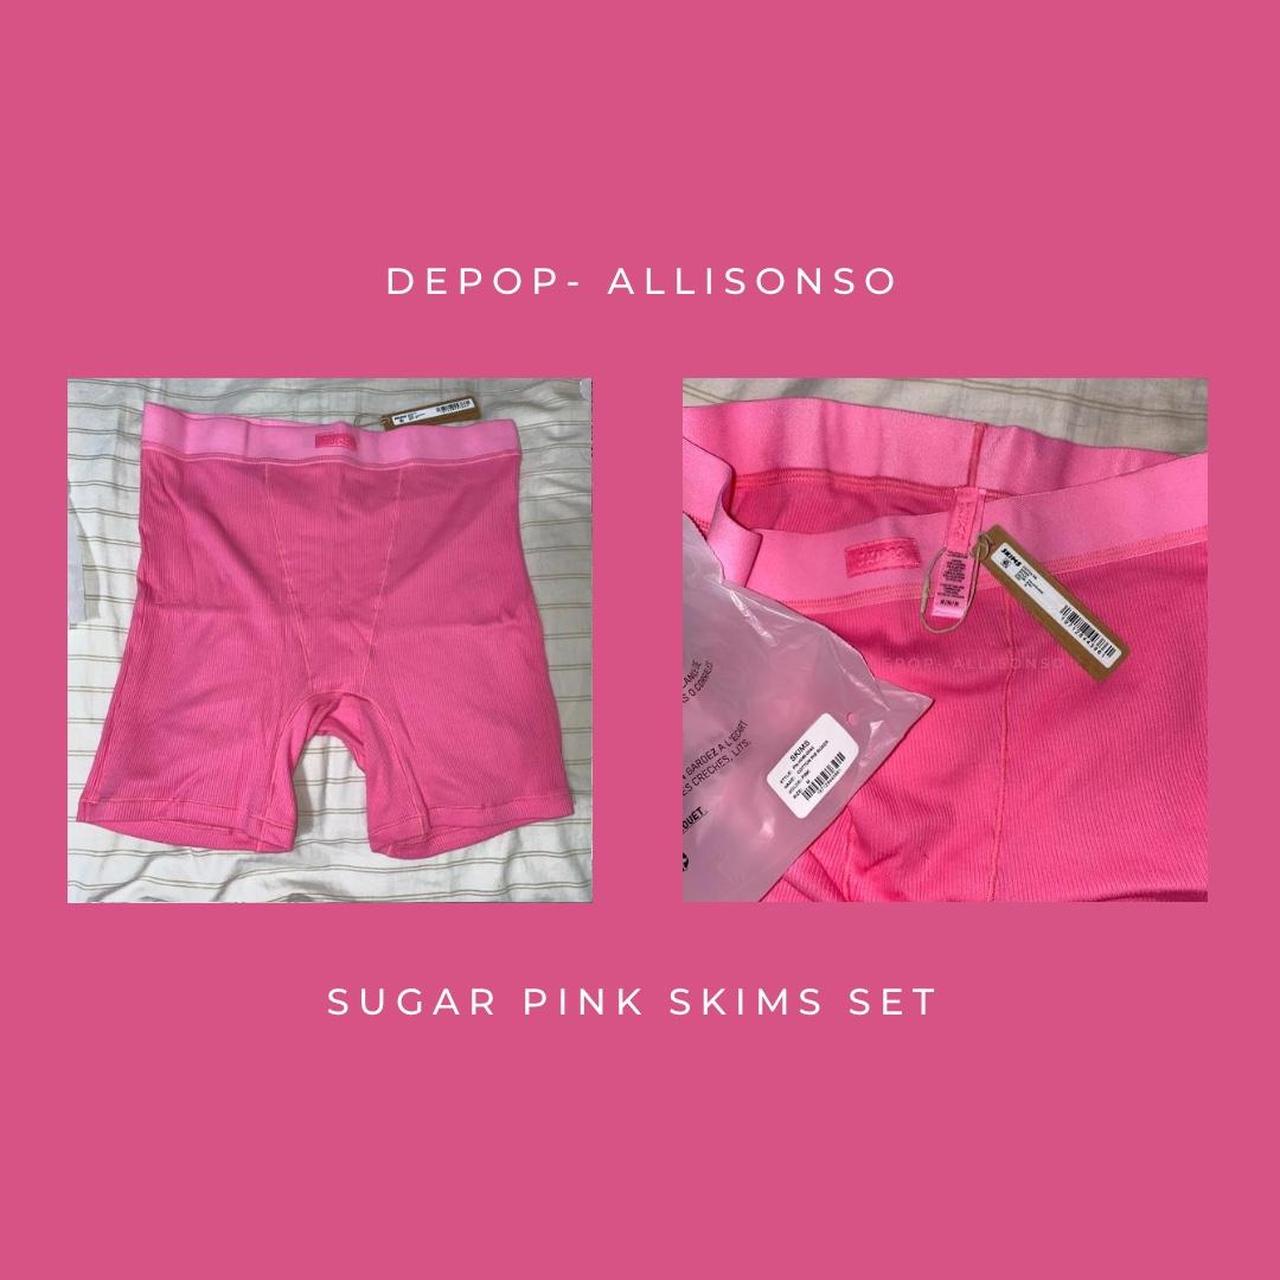 Skims Cotton Rib Tank and Boxer Set in Sugar Pink! - Depop